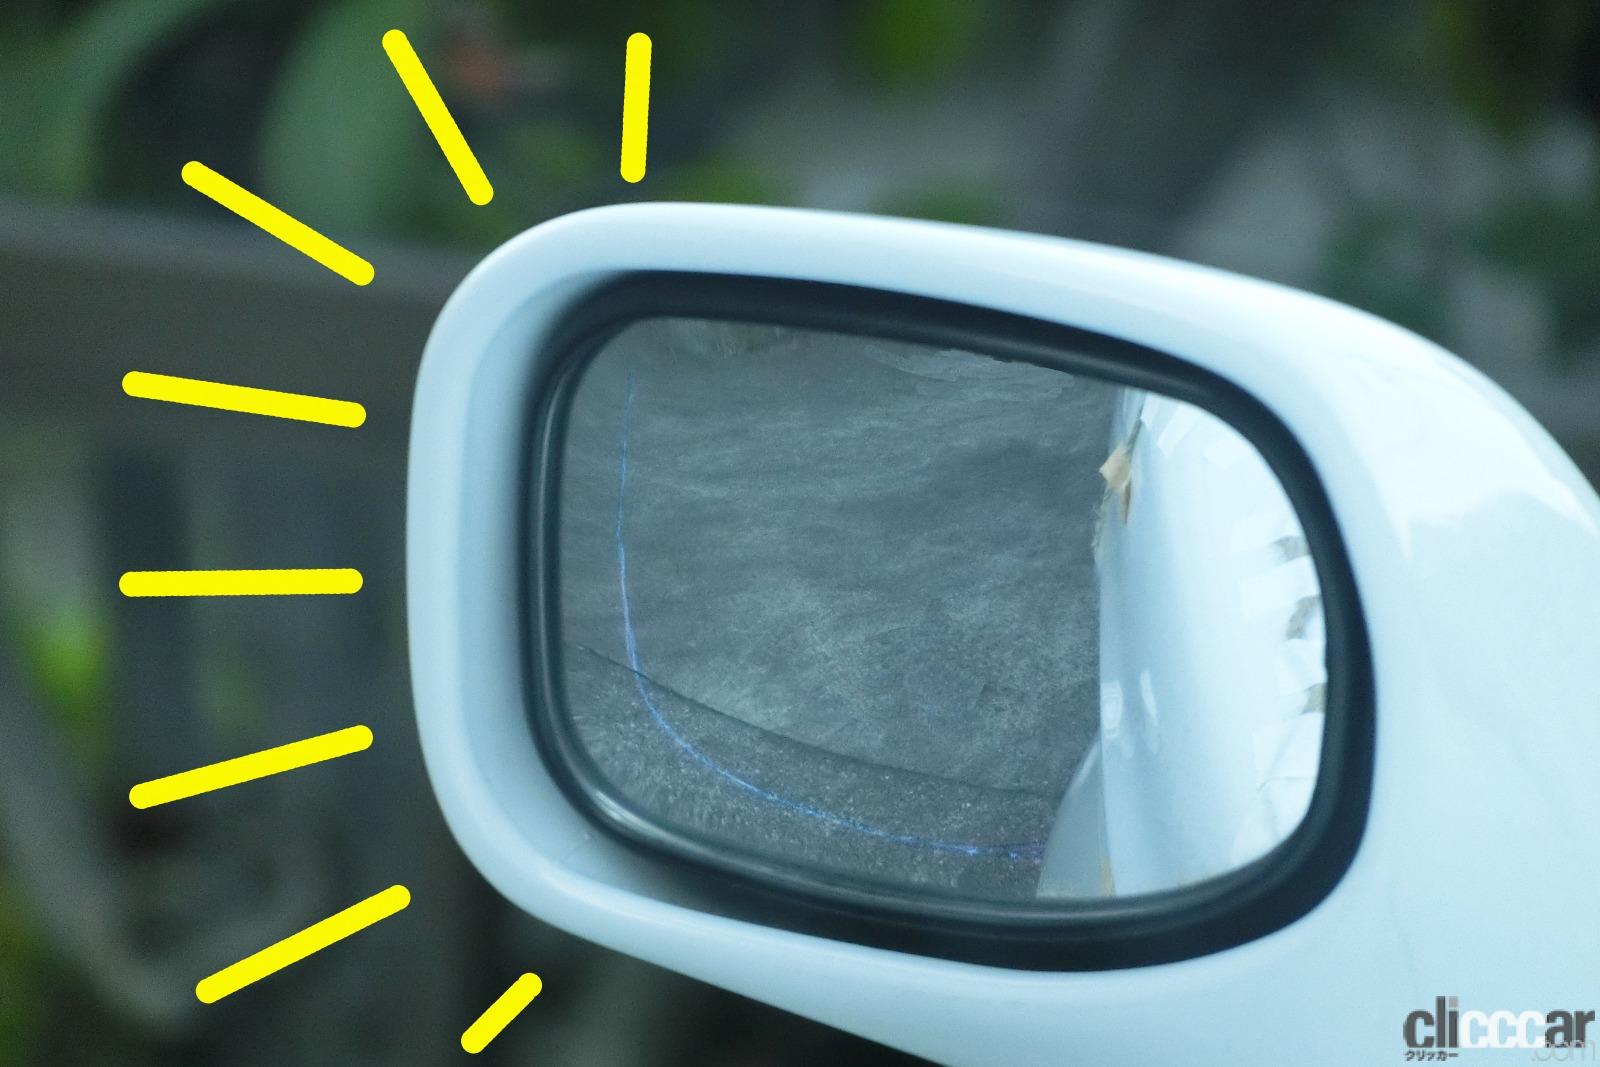 Out Of Line 画像 Suv車種などのサイドアンダーミラーはなぜ必要 付いてる意味 鏡に映る像の見方は 真夏の汗だく実験で探ってみた Clicccar Com